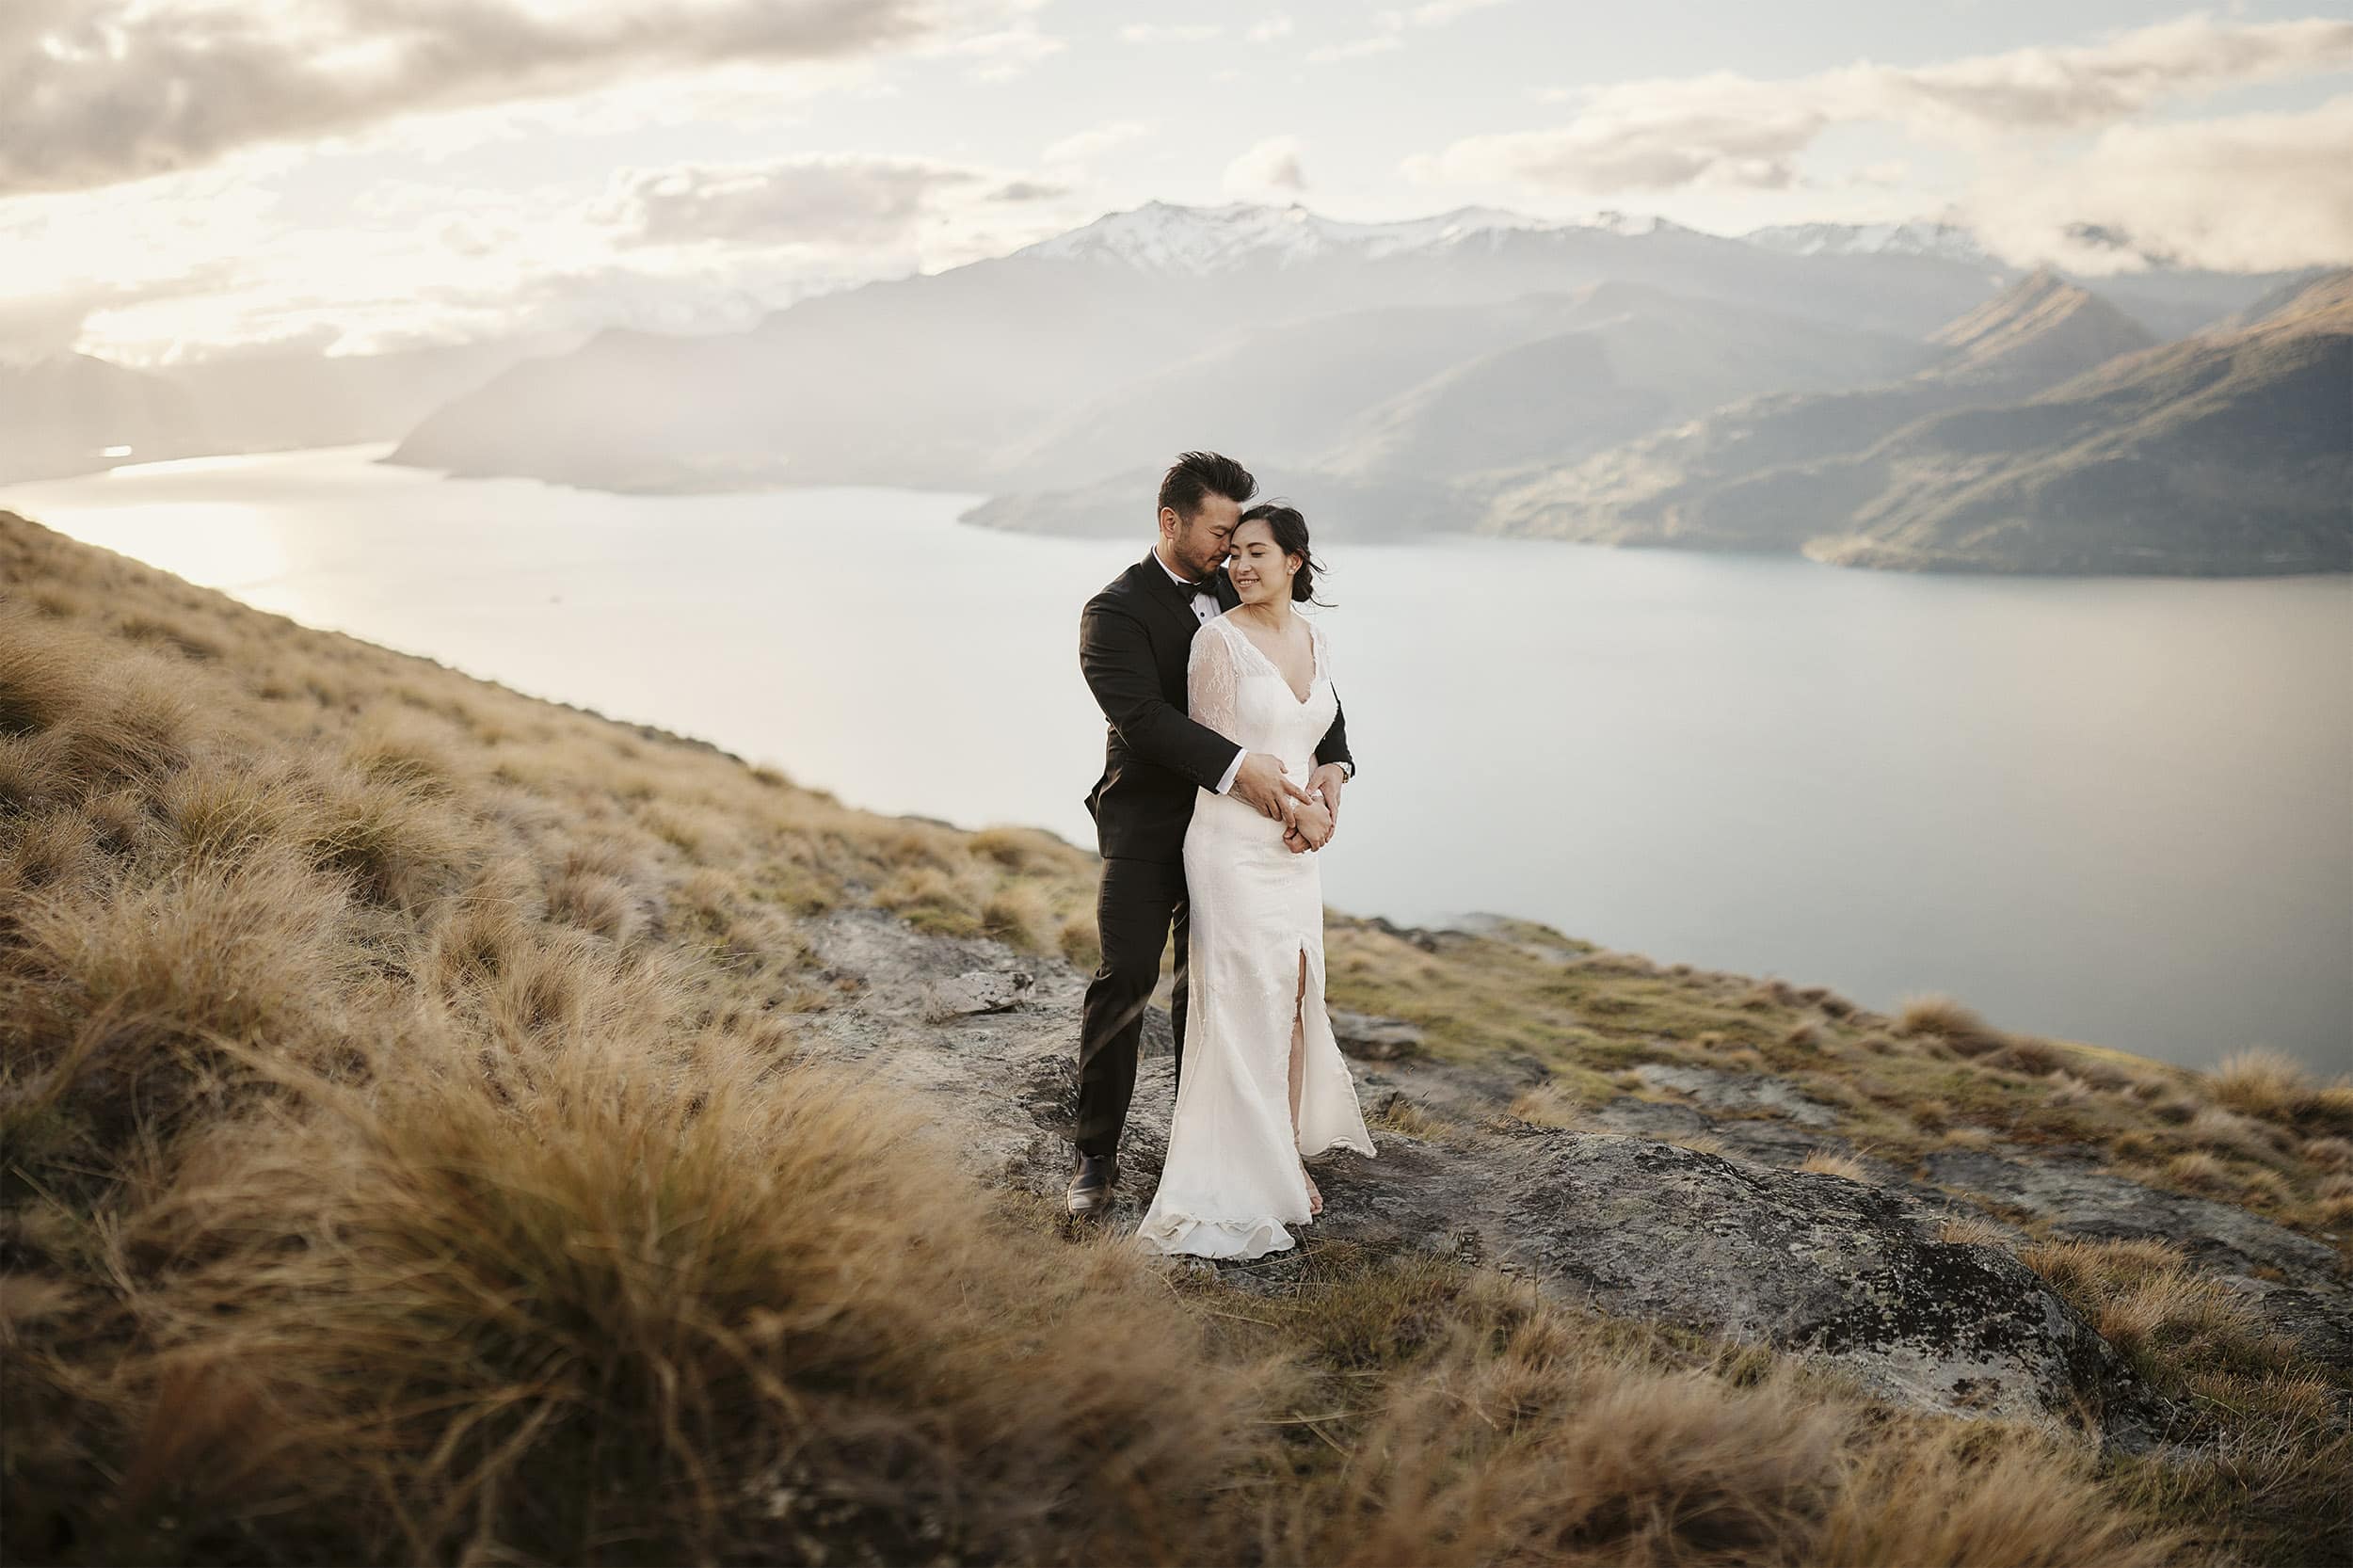 Julie & Khoa's Queenstown NZ Heli Pre-Wedding Shoot